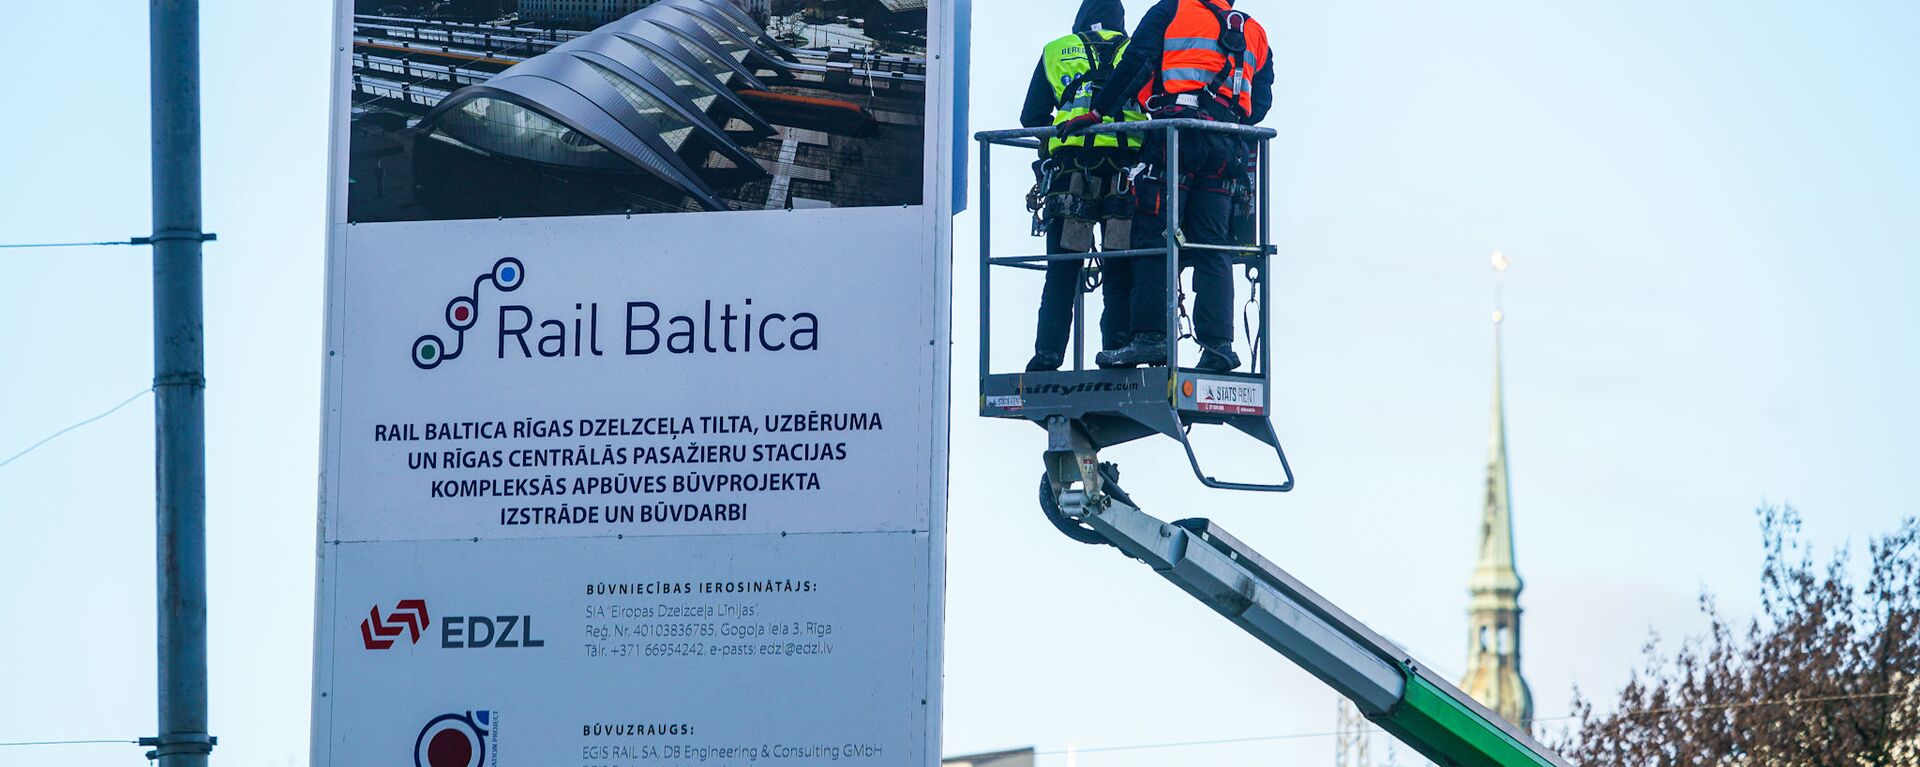 Официальное открытие строительных работ Центрального узла Rail Baltica в Риге - Sputnik Латвия, 1920, 23.04.2021